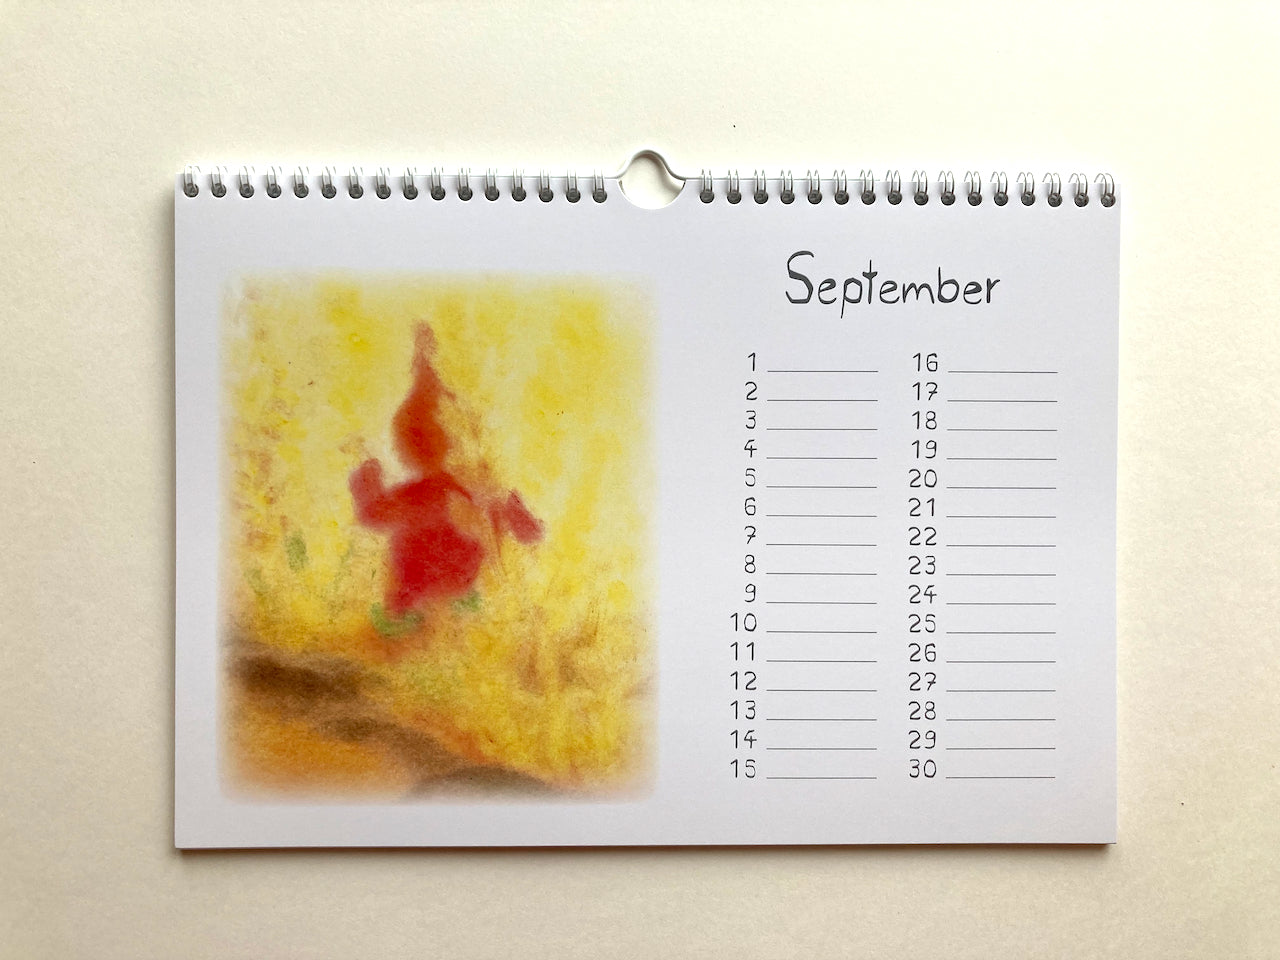 Immerwährender Zwergenkalender, September in Seccorell-Technik von Andrea Reiß